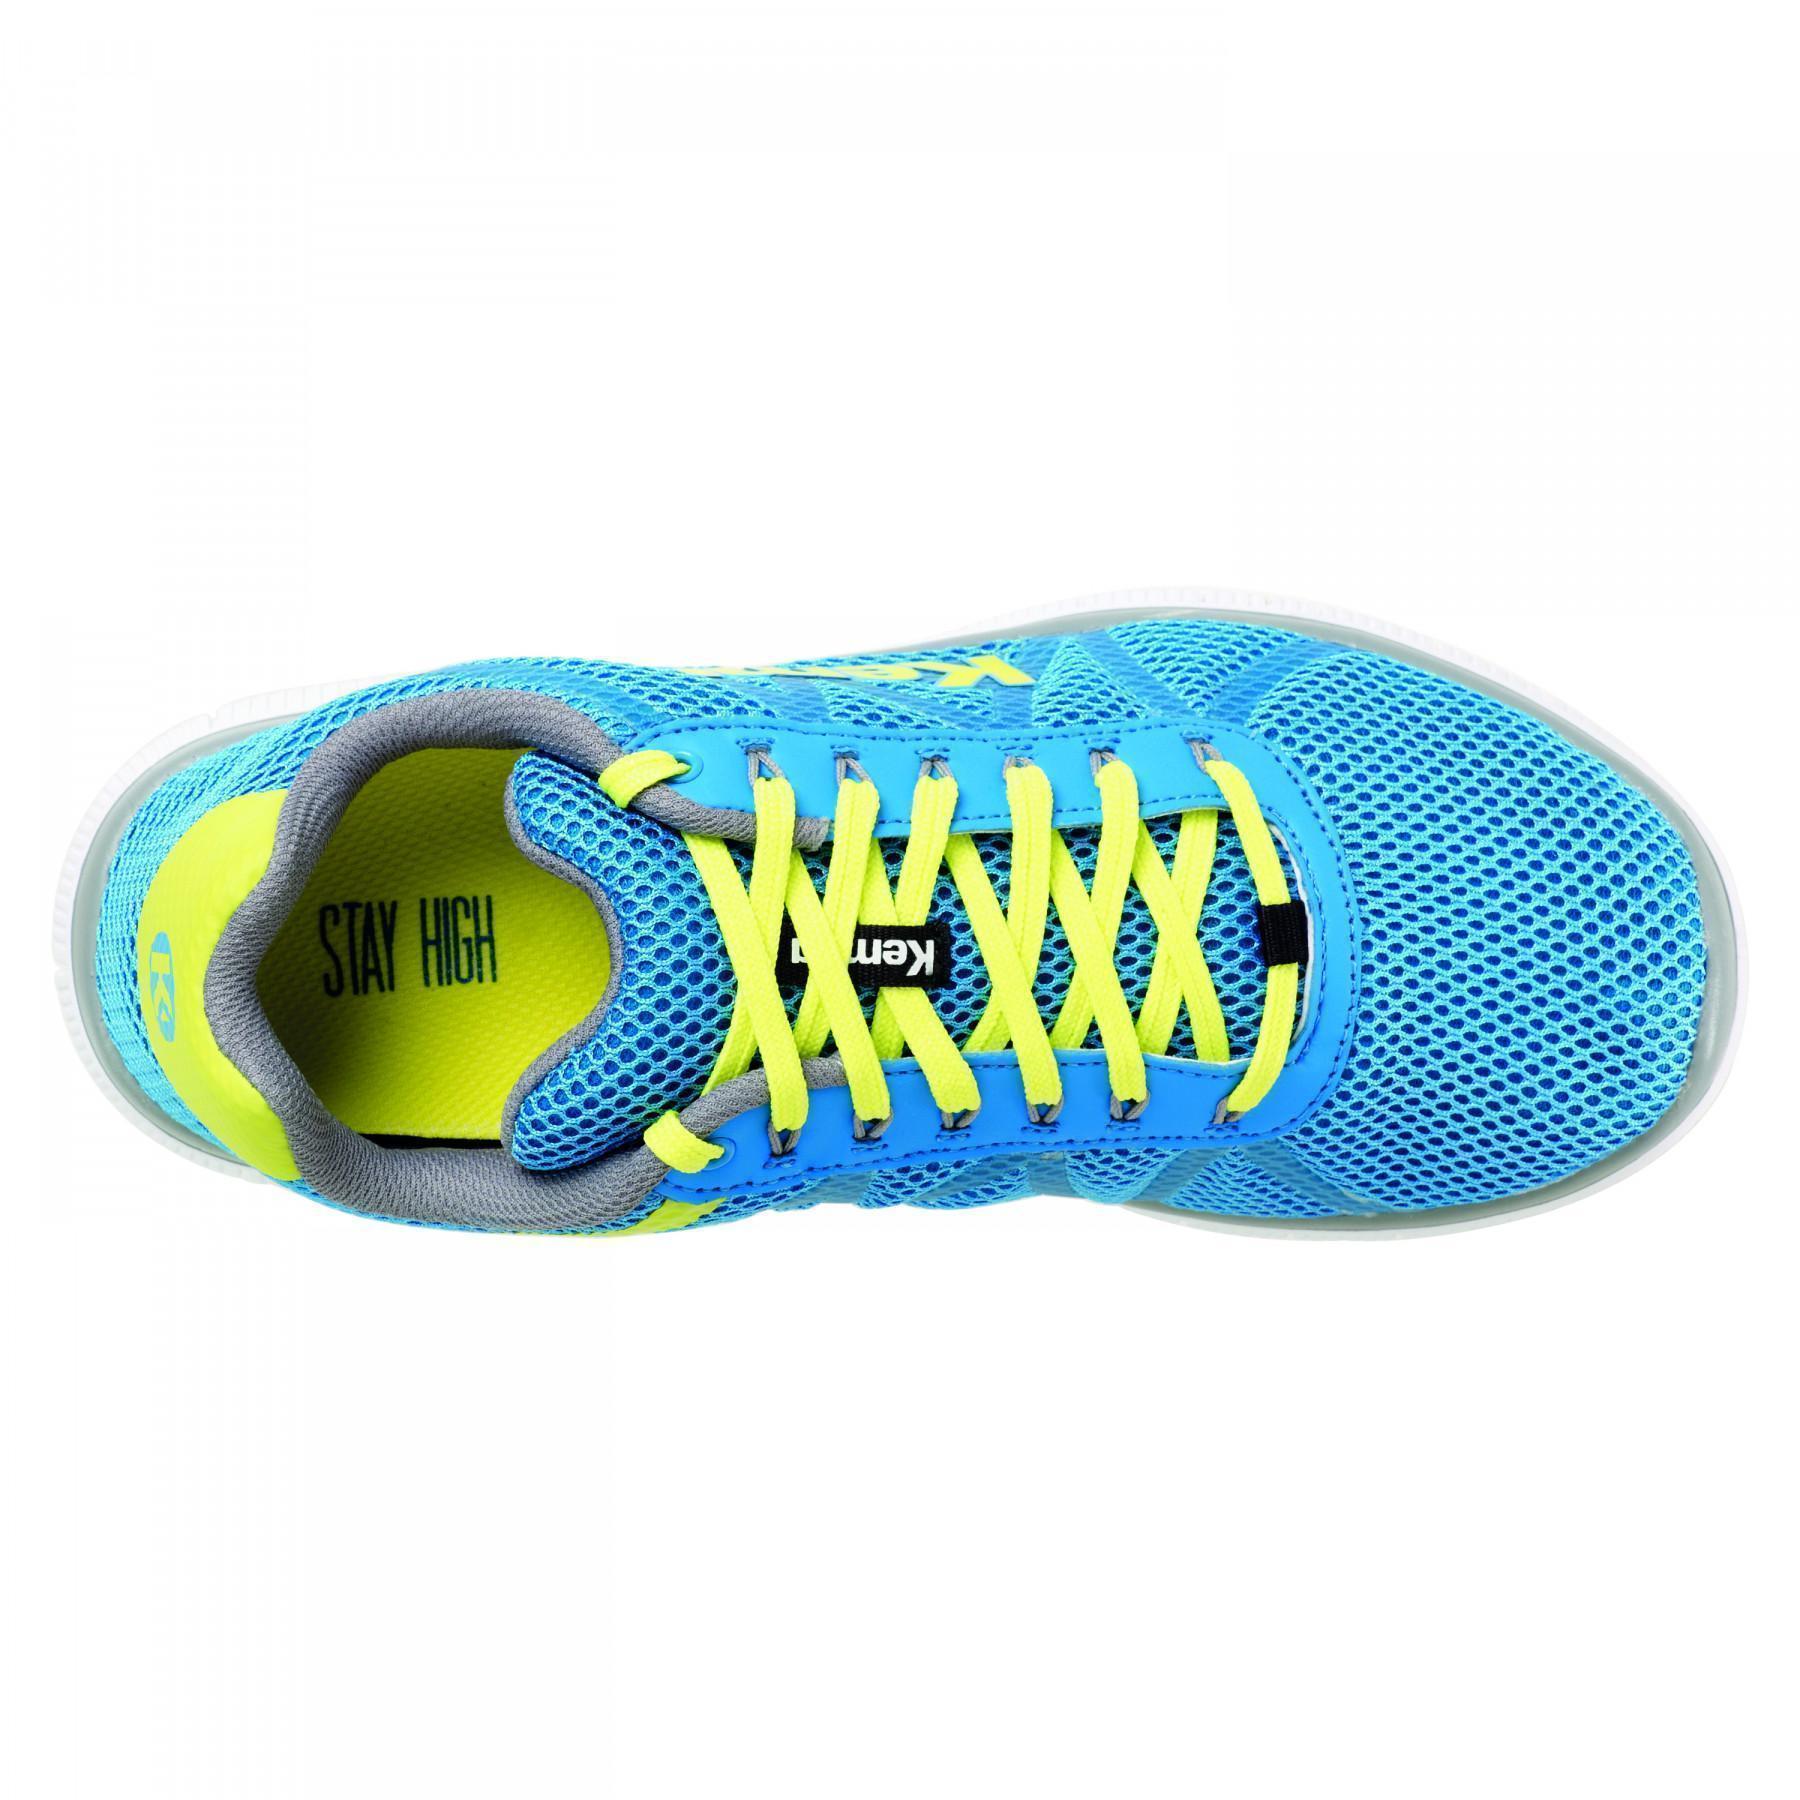 Sapatos Kempa K-Float Bleu/jaune